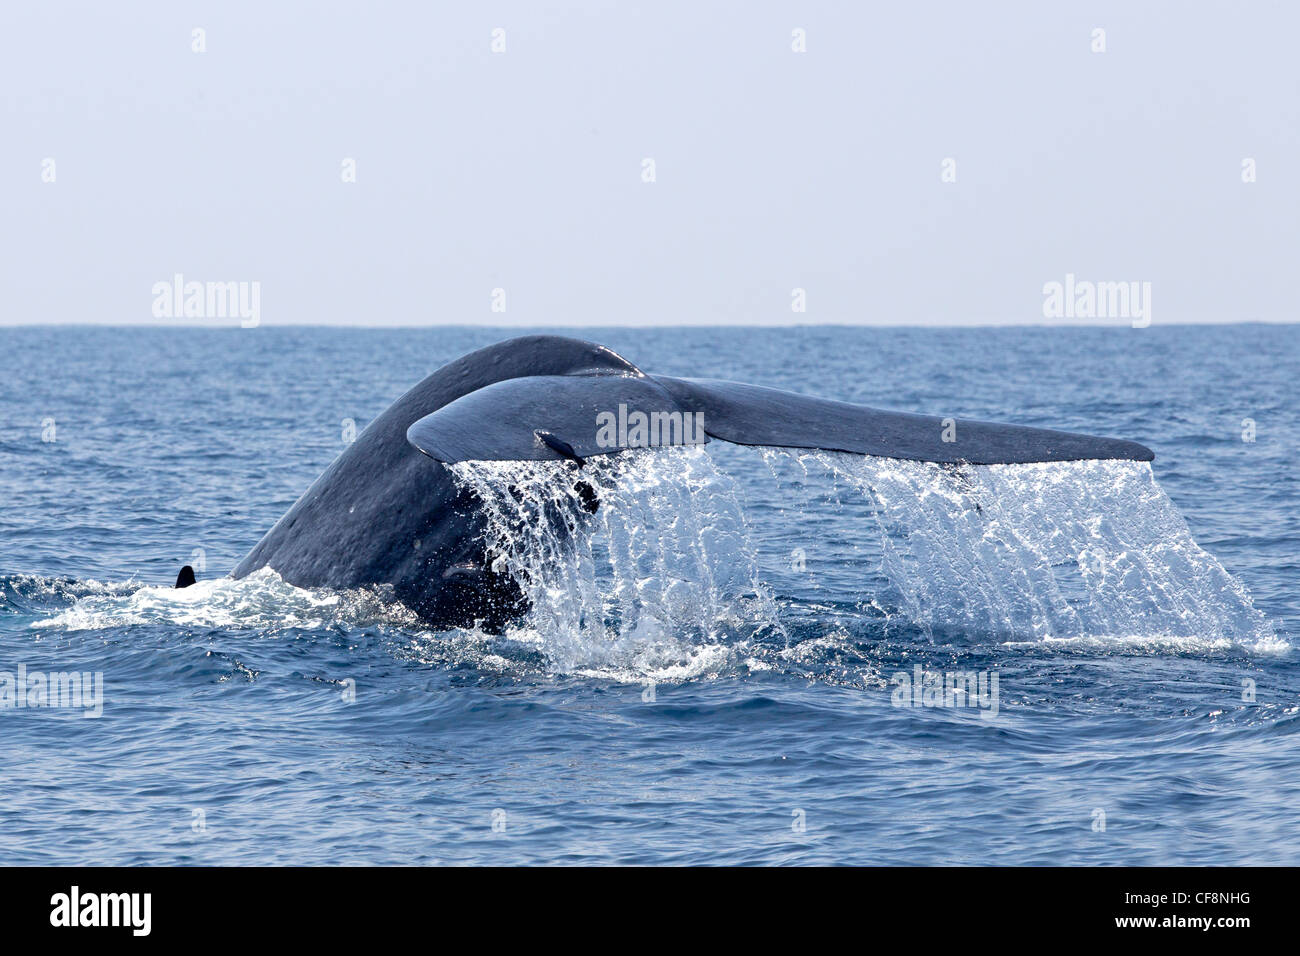 La balenottera azzurra con coda sollevata al di fuori dell'acqua Foto Stock